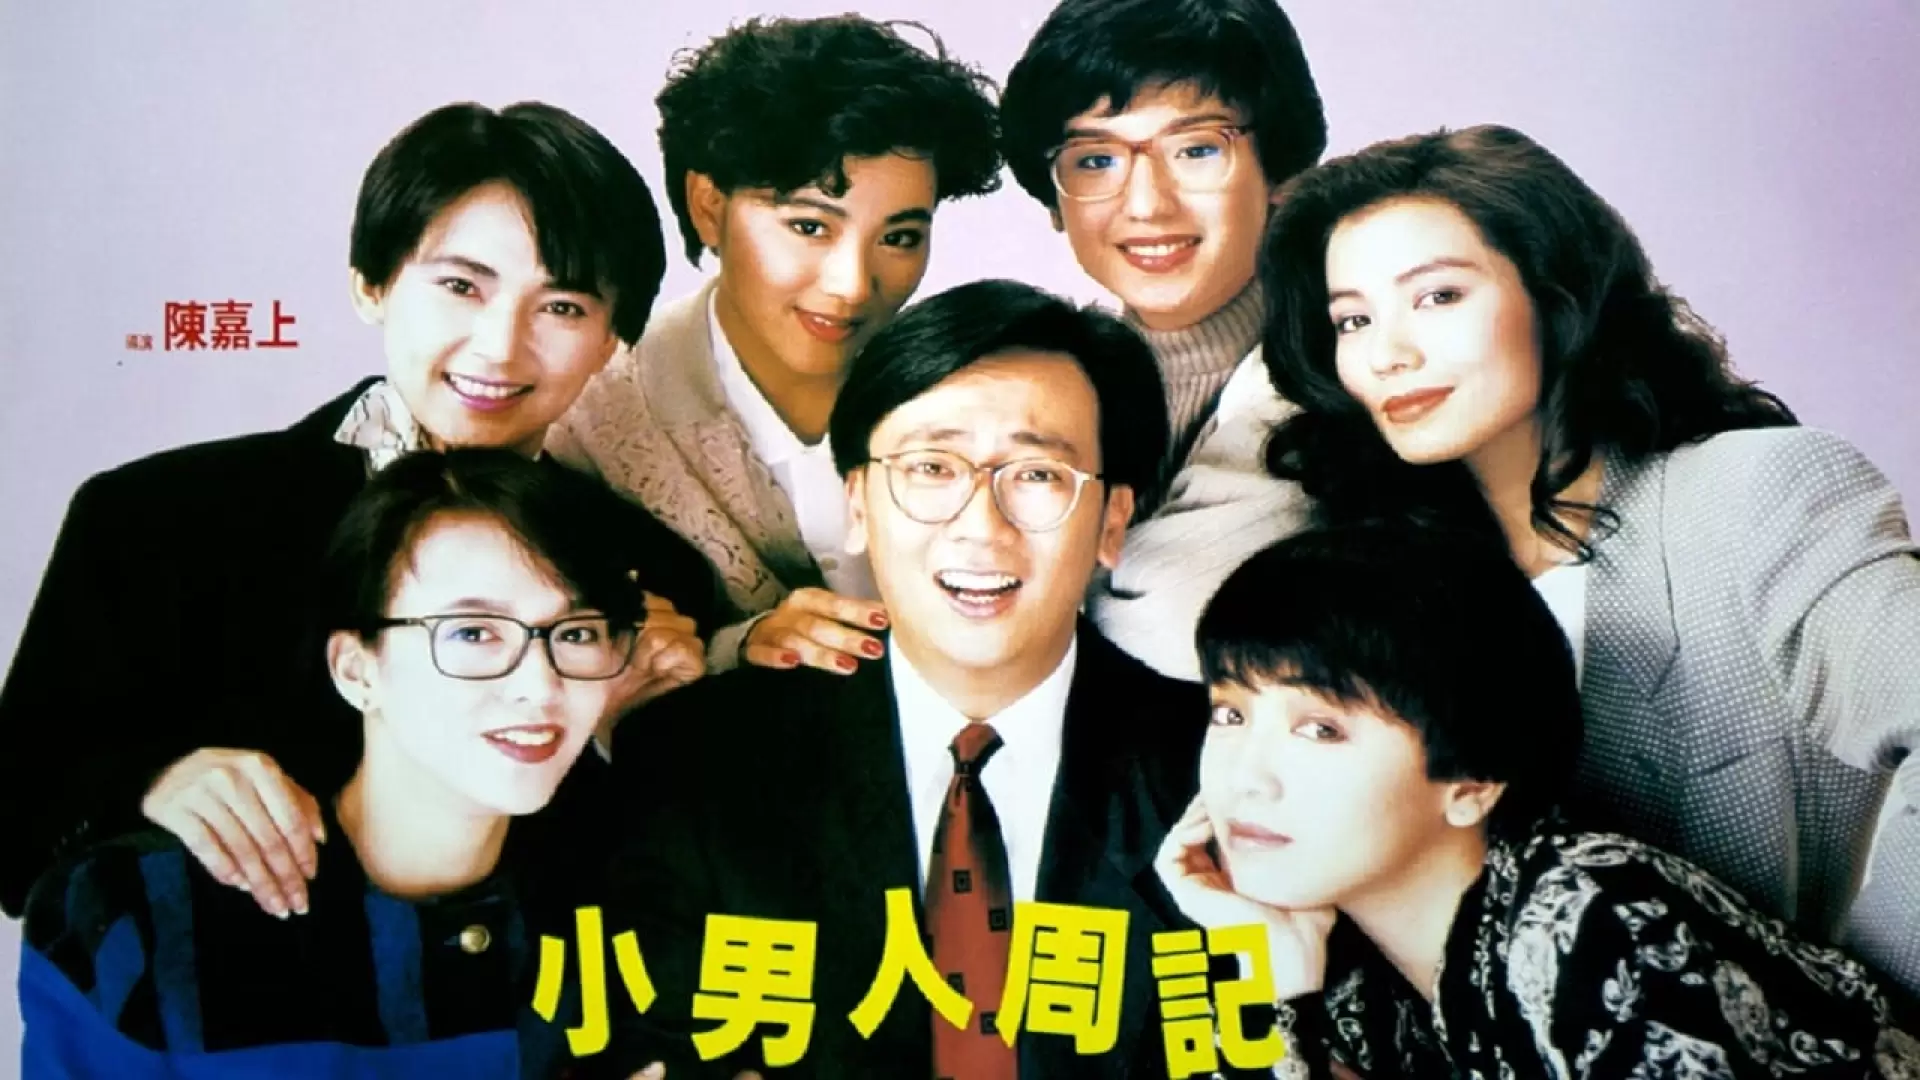 دانلود فیلم Xiao nan ren zhou ji 1989